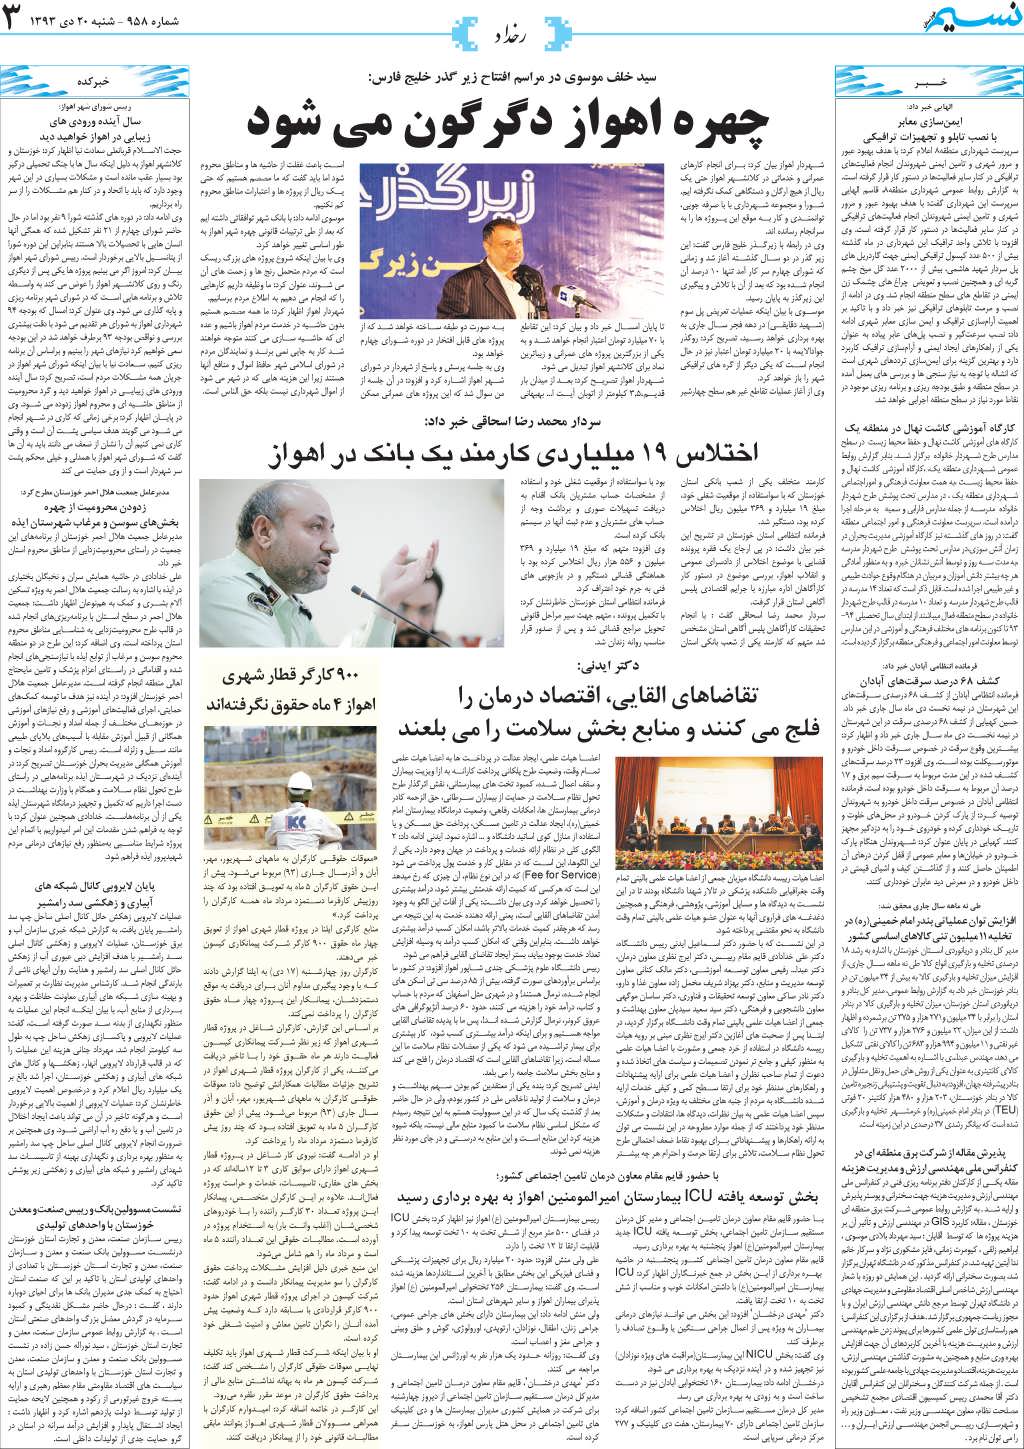 صفحه رخداد روزنامه نسیم شماره 958